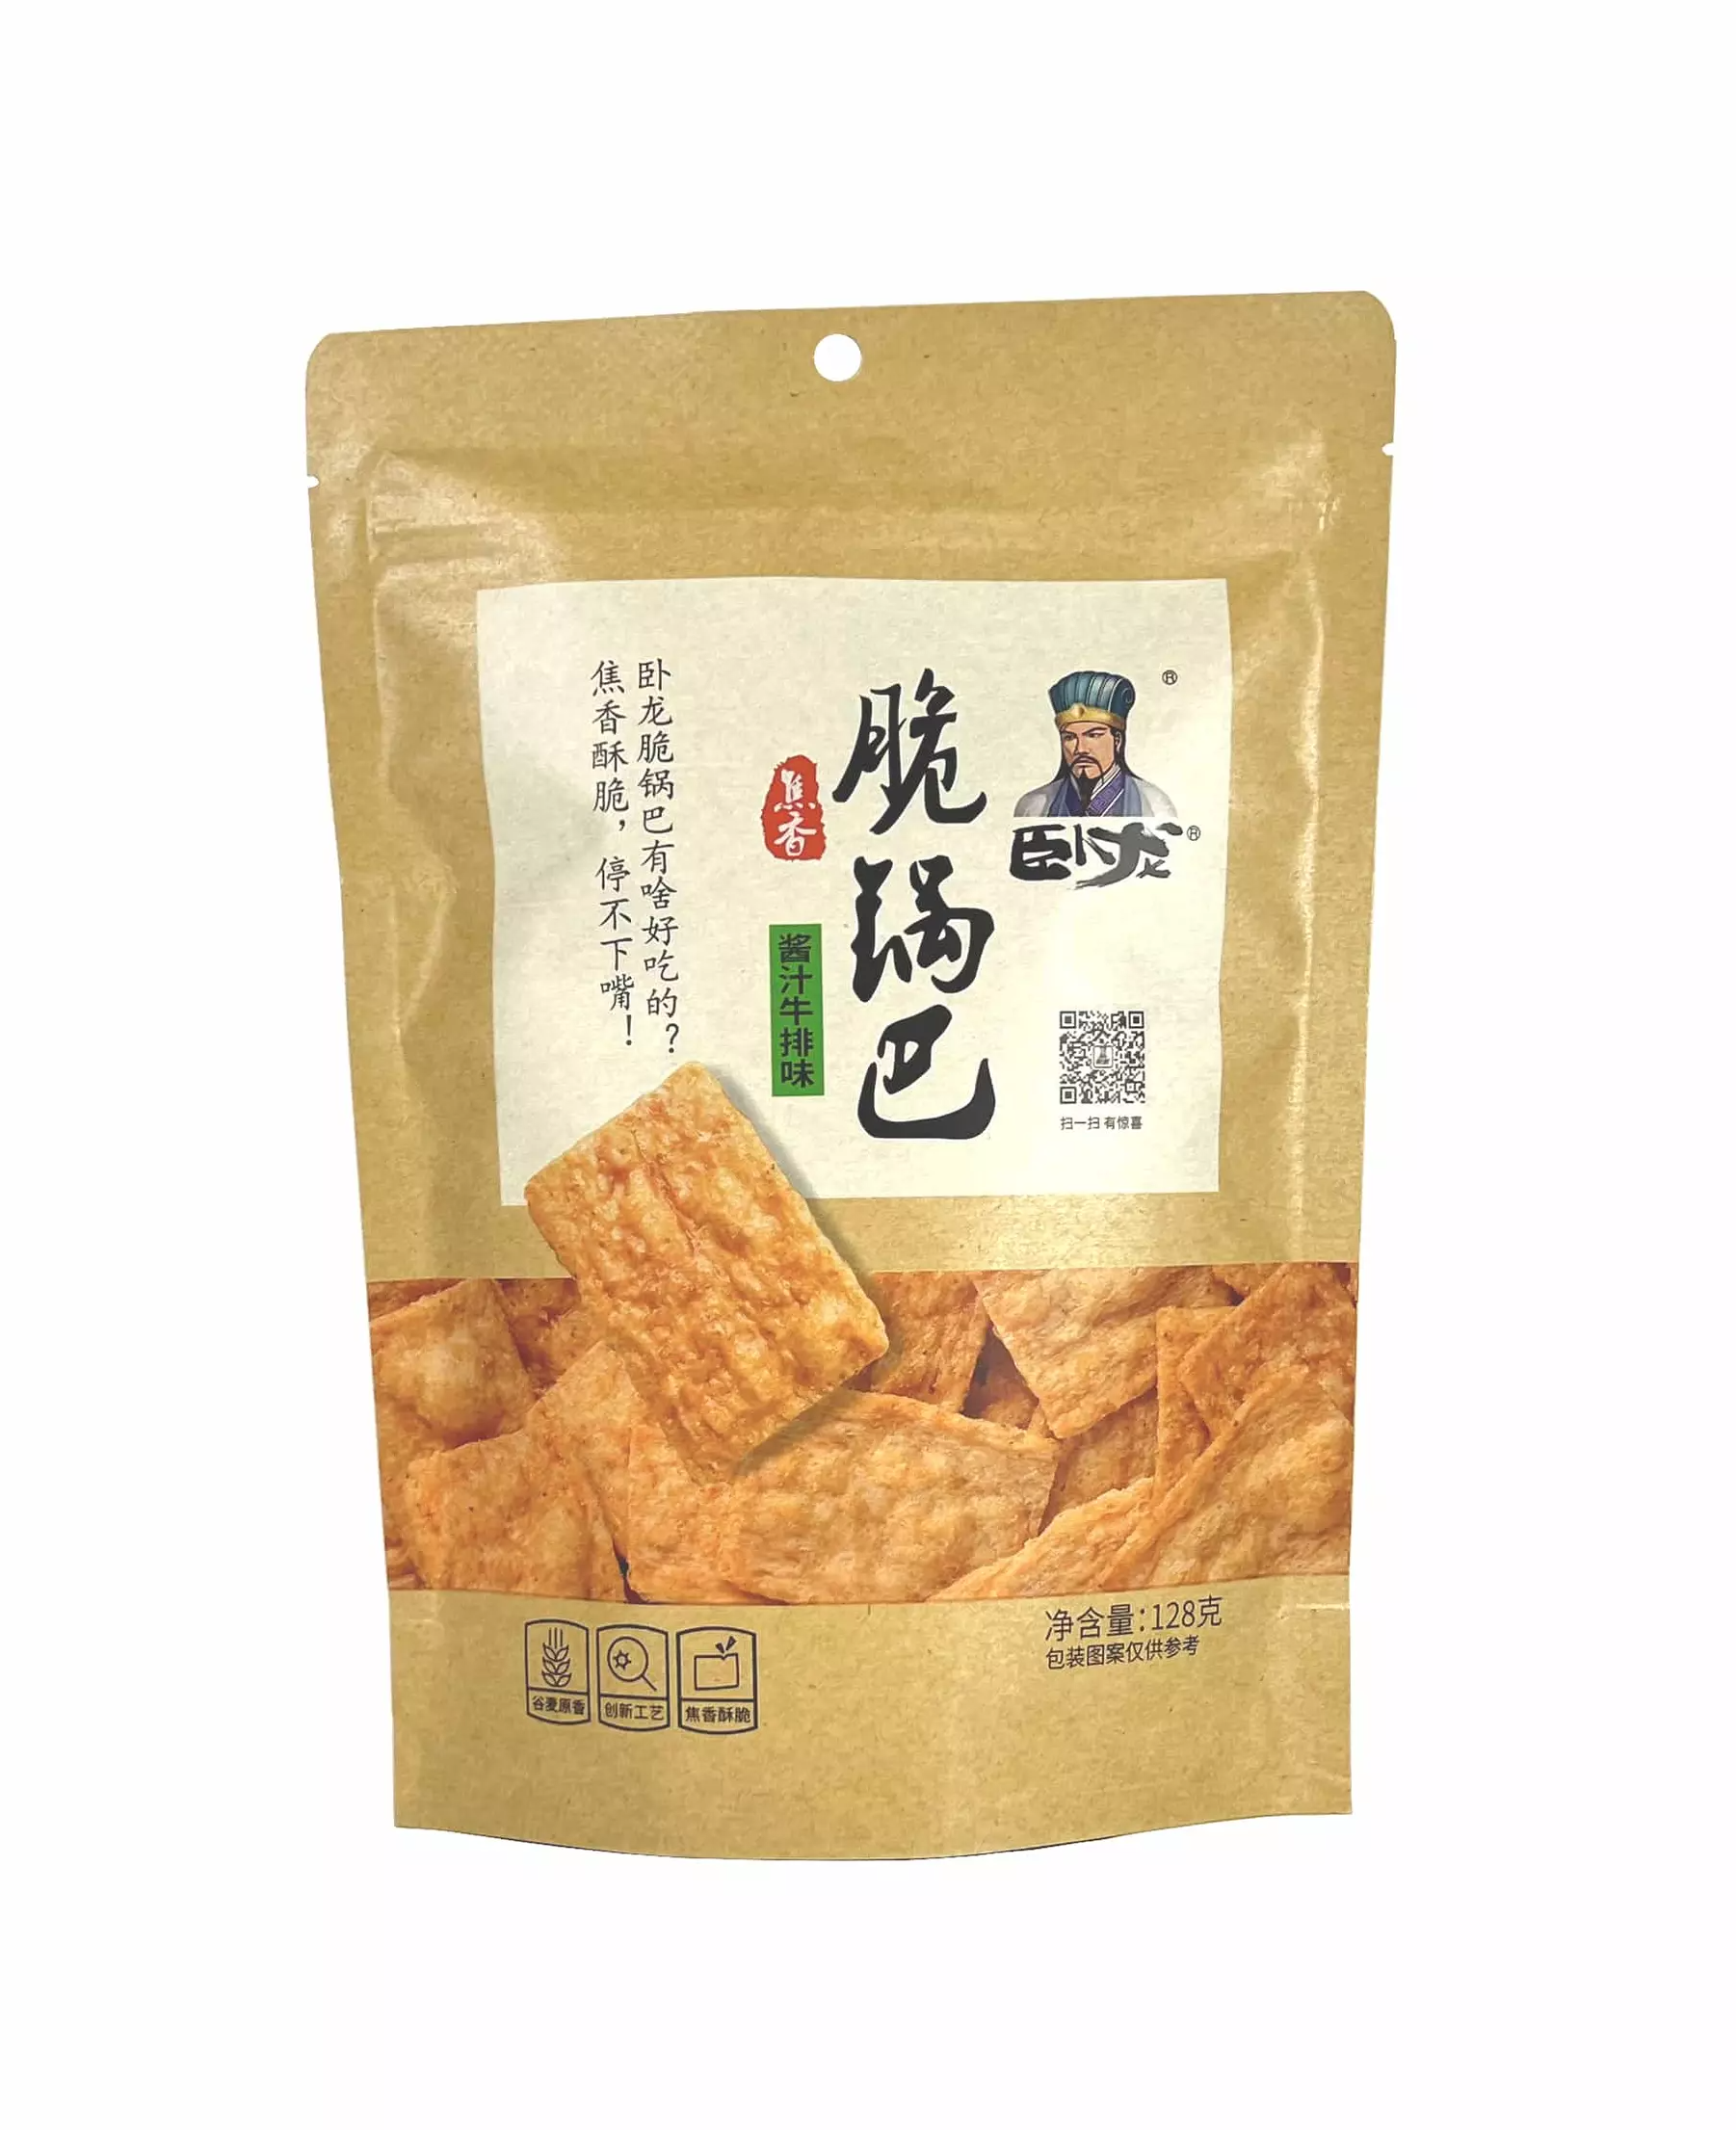 老灶锅巴 酱汁牛排风味 128g 卧龙 中国